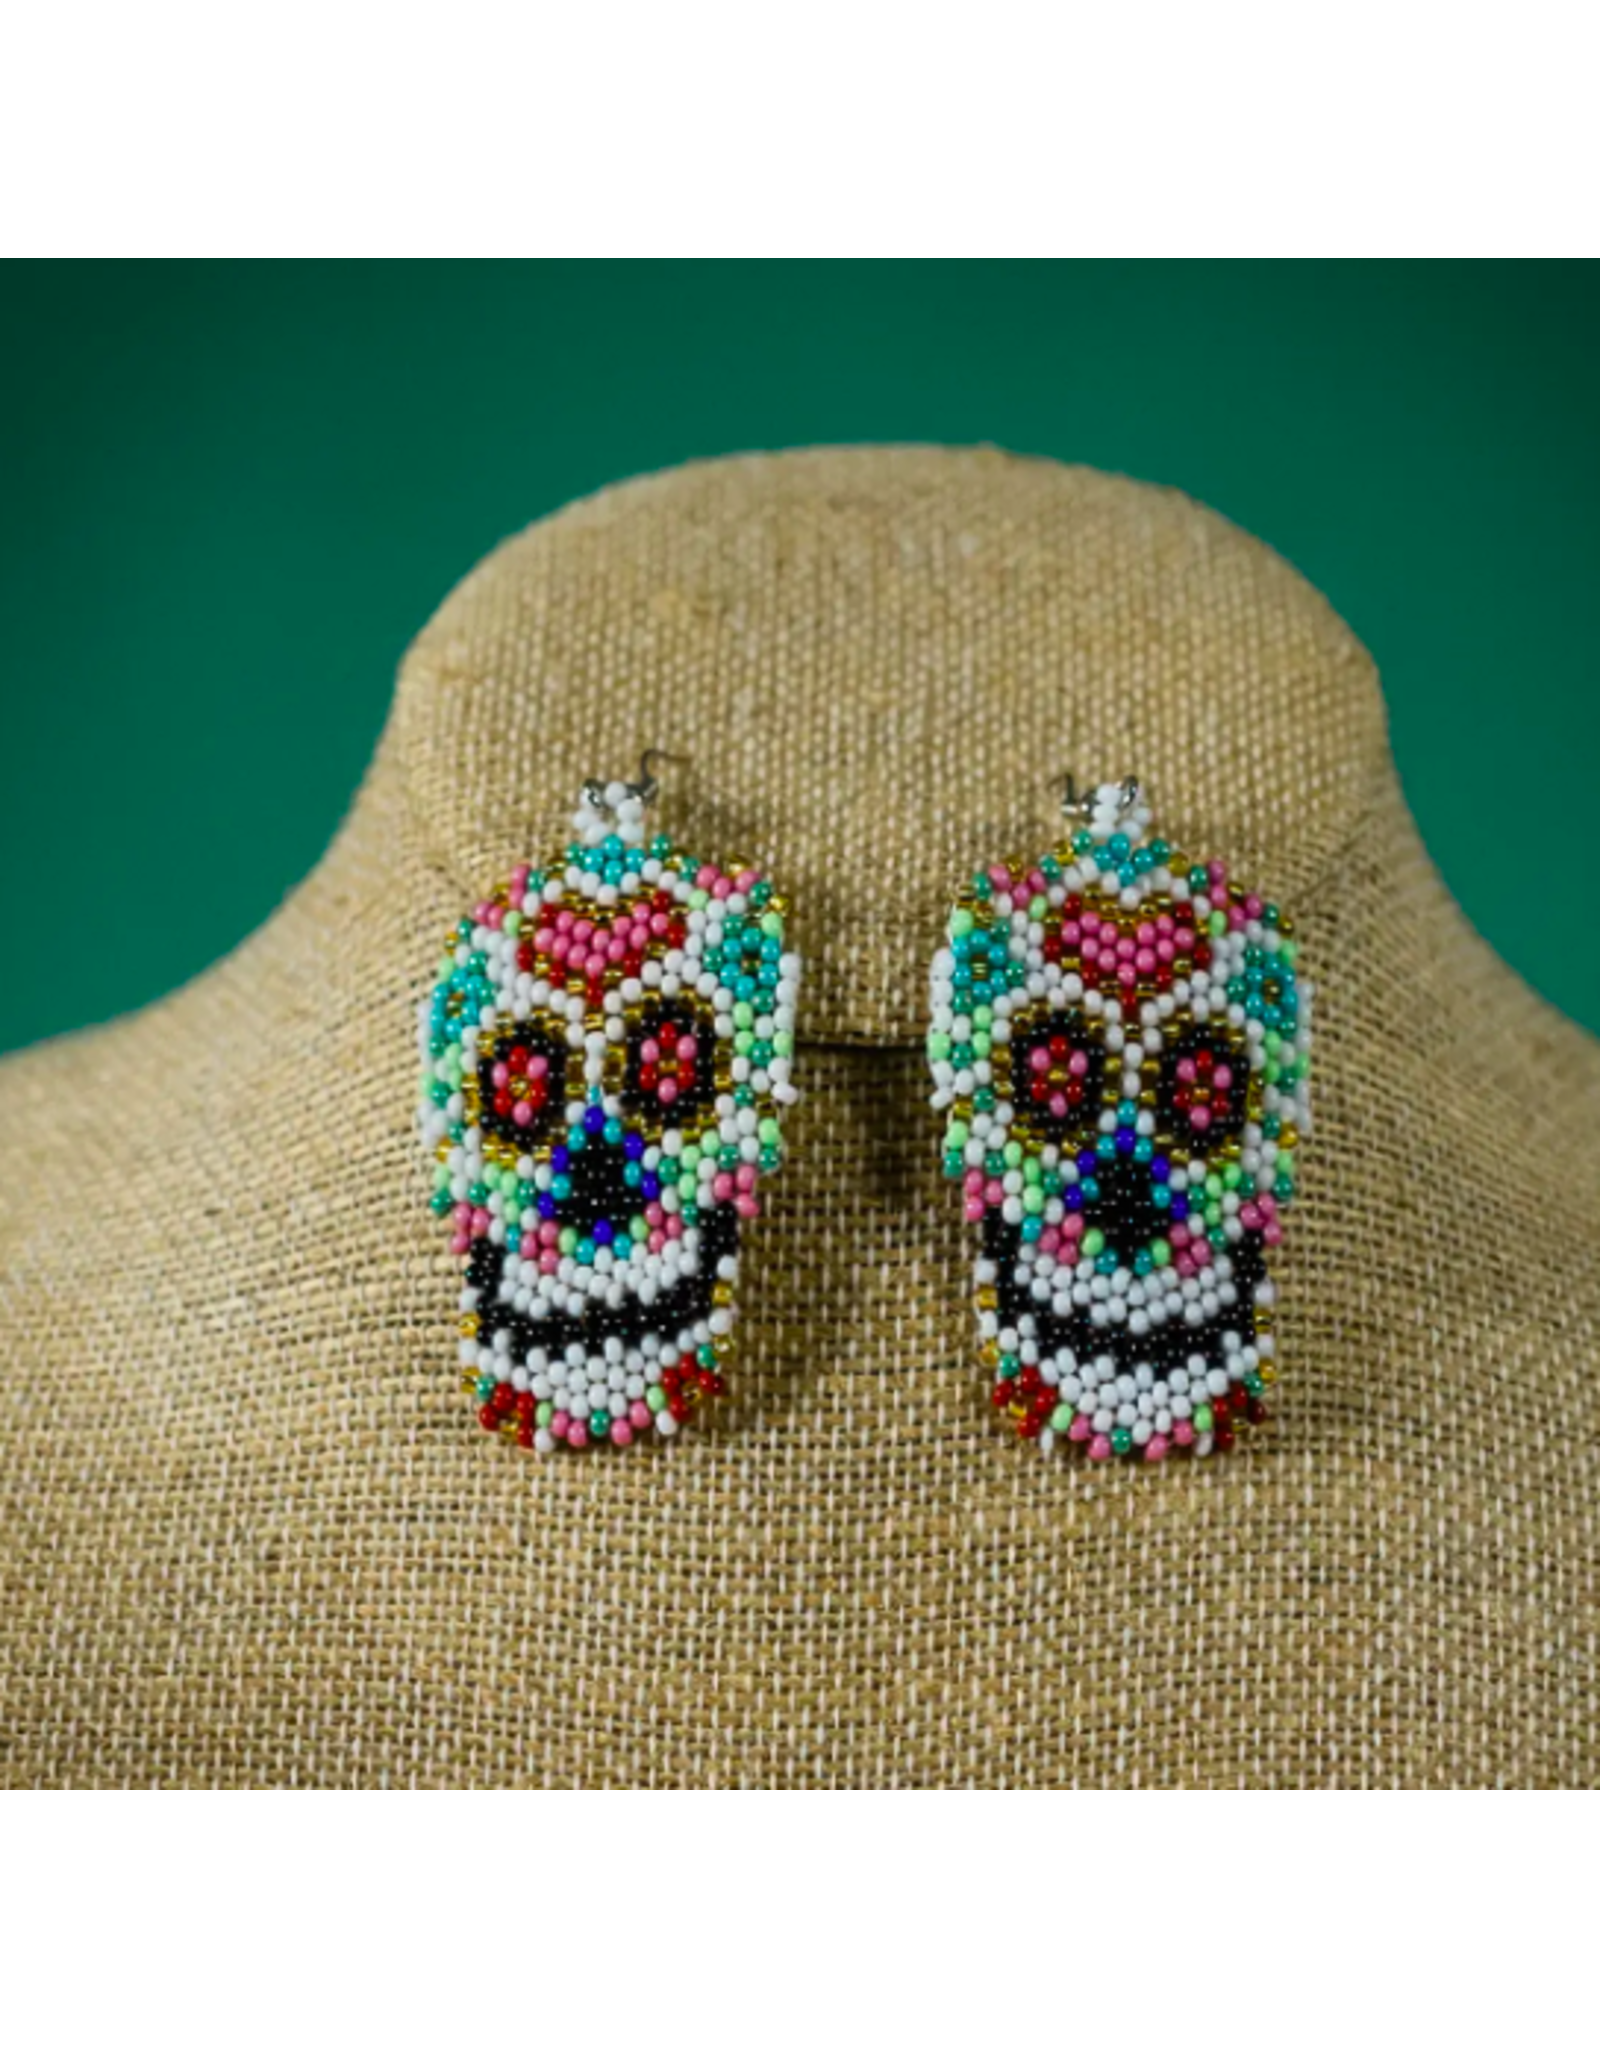 Trade roots Sugar Skull Beaded Earrings, Guatemala